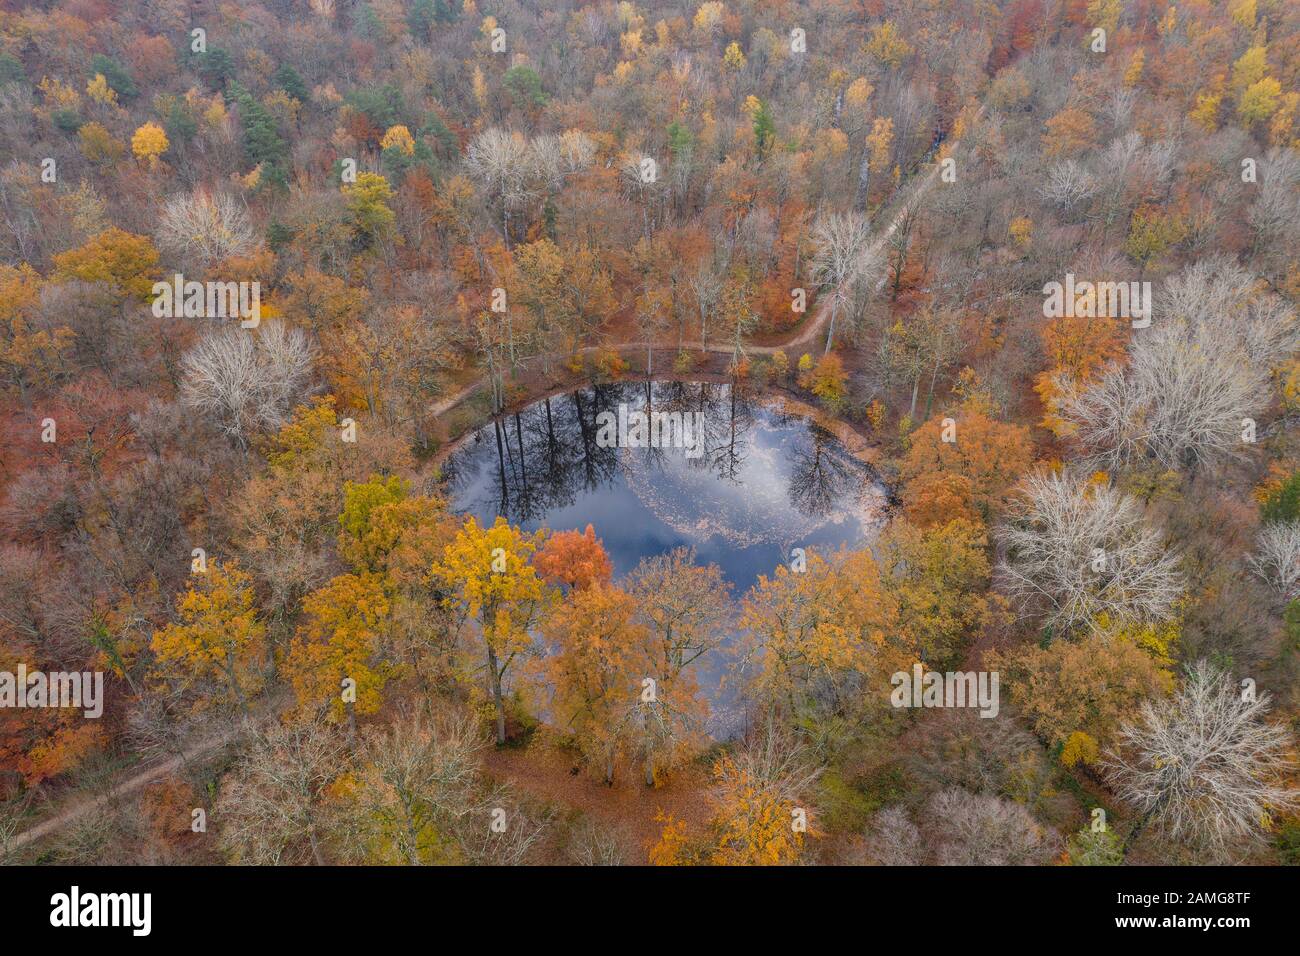 Frankreich, seine et Marne, Fontainebleau, Wald Fontainebleau, Biosphärenreservat Fontainebleau und Gatinais von der UNESCO, Teich Evees im Herbst (Luftbild) Stockfoto